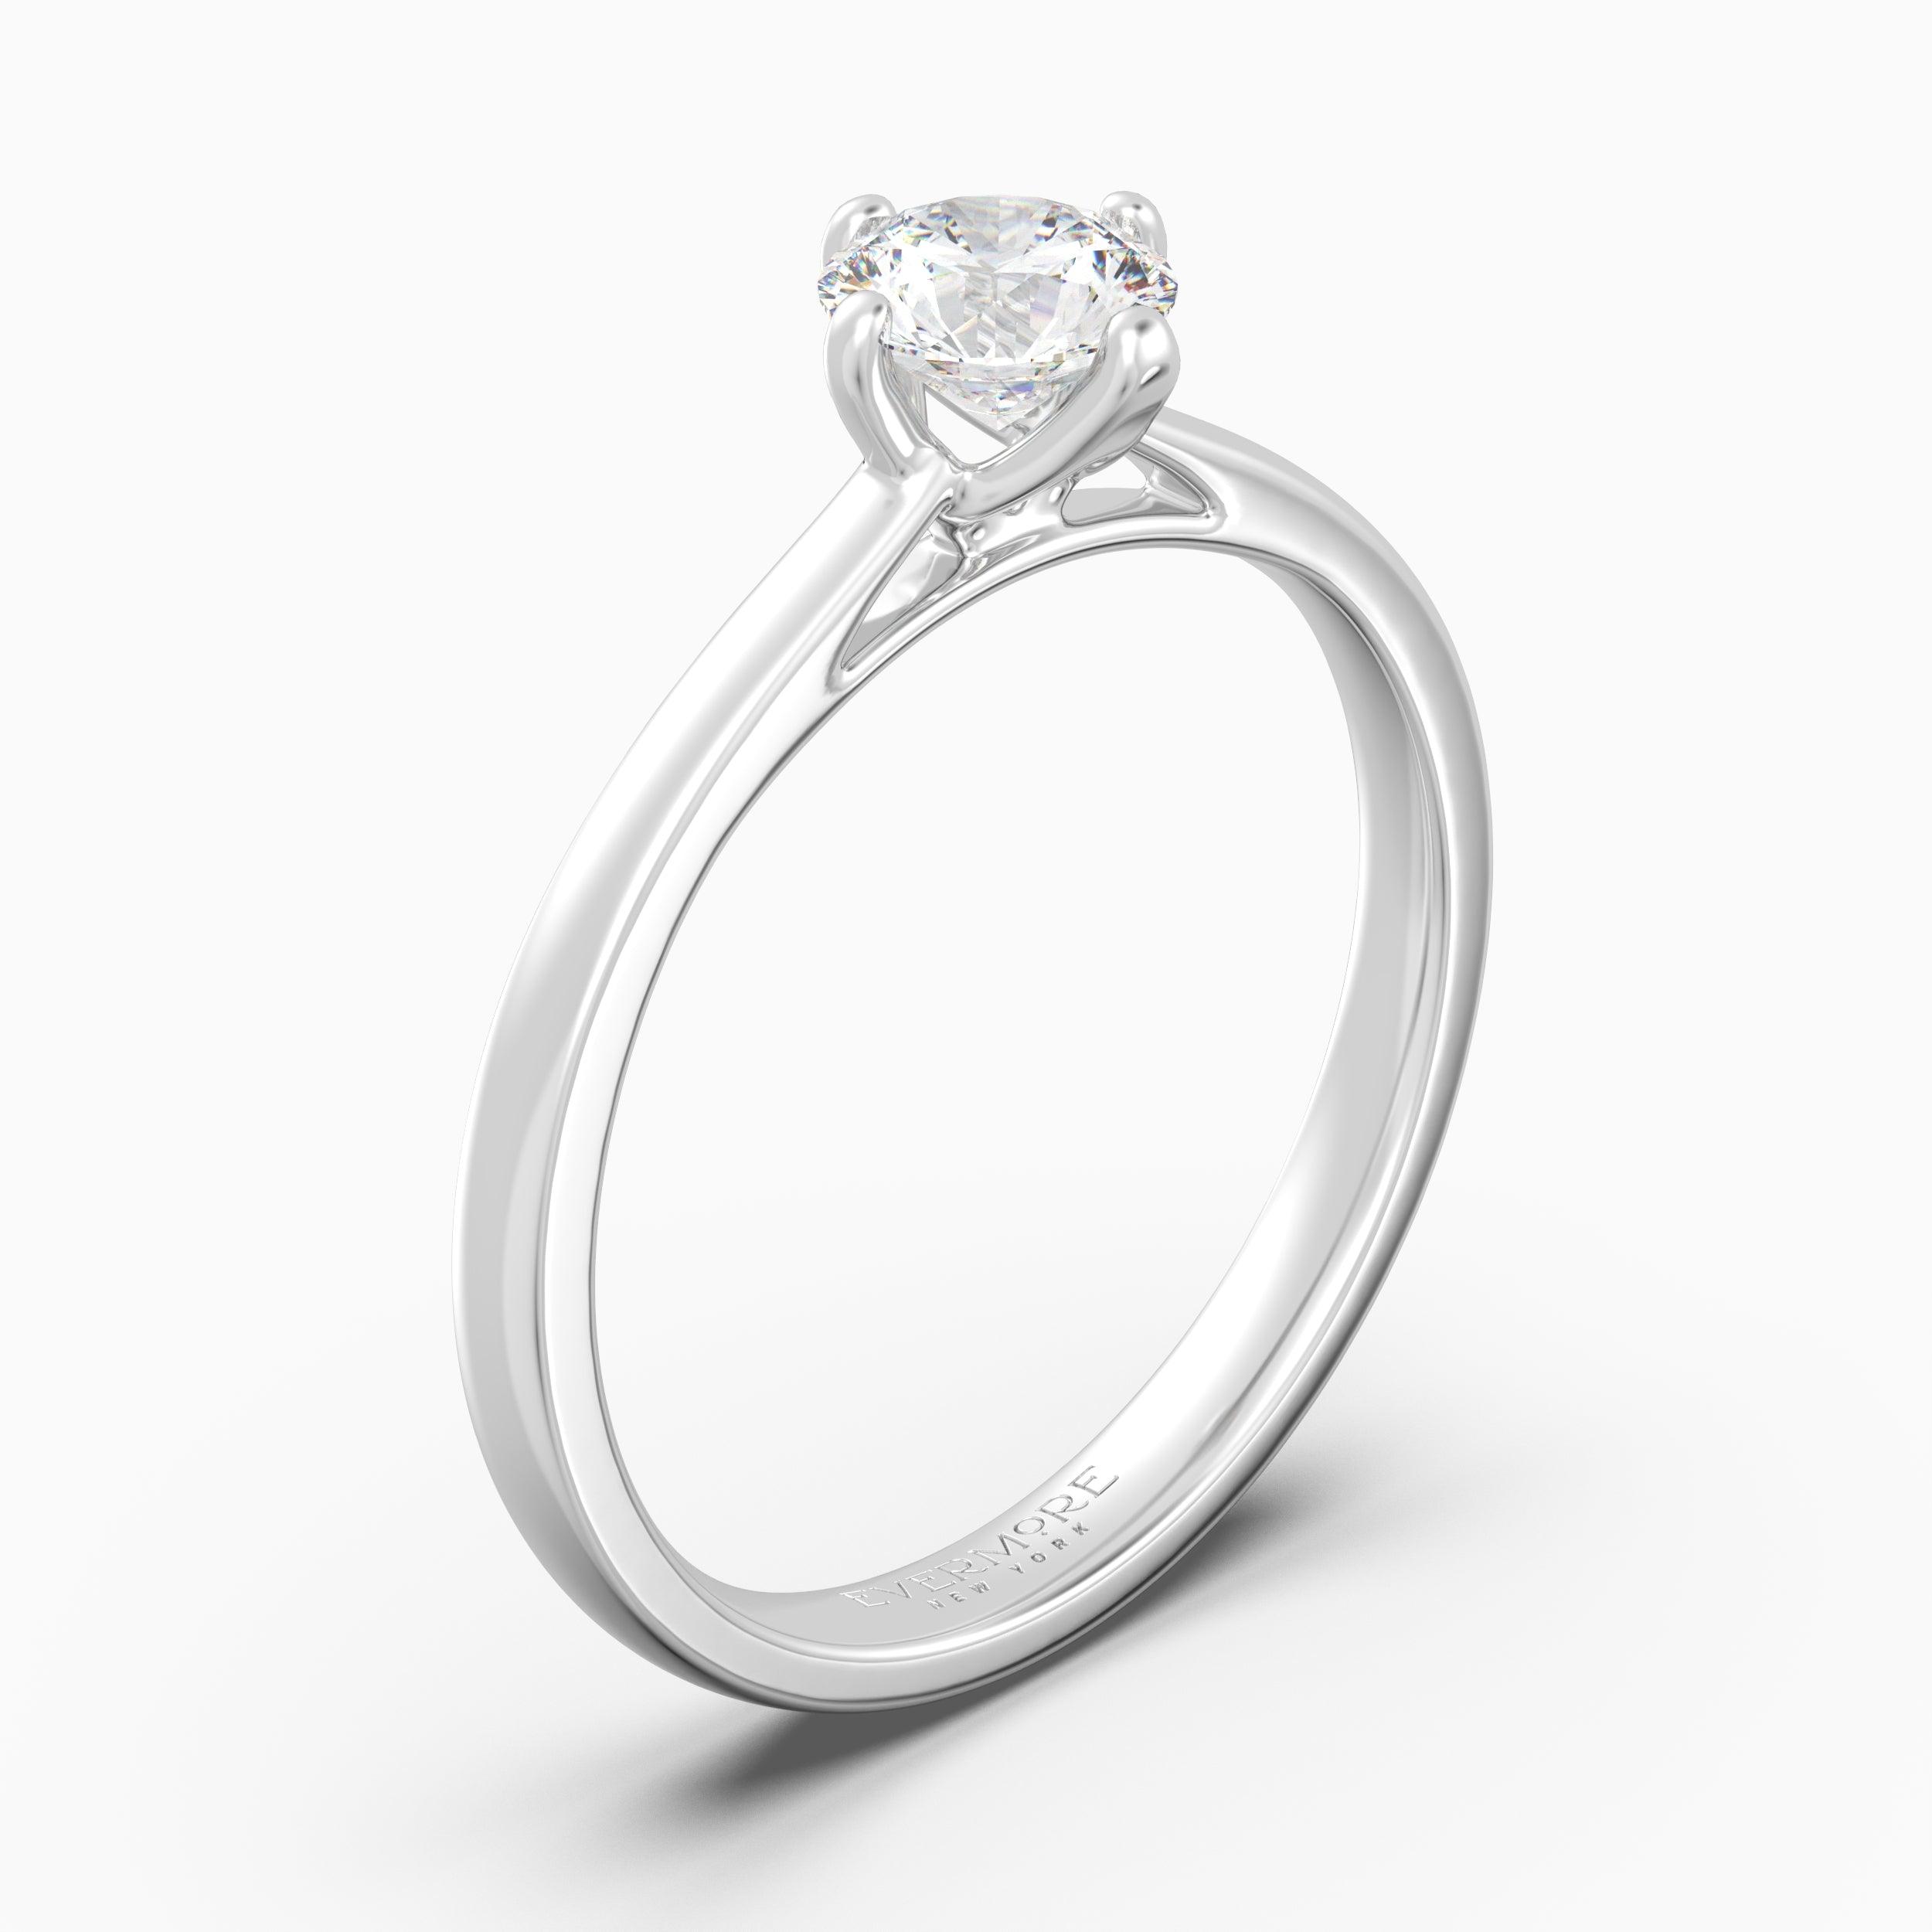 The Glaze Round Brilliant - White Gold / 0.5 ct - Evermore Diamonds